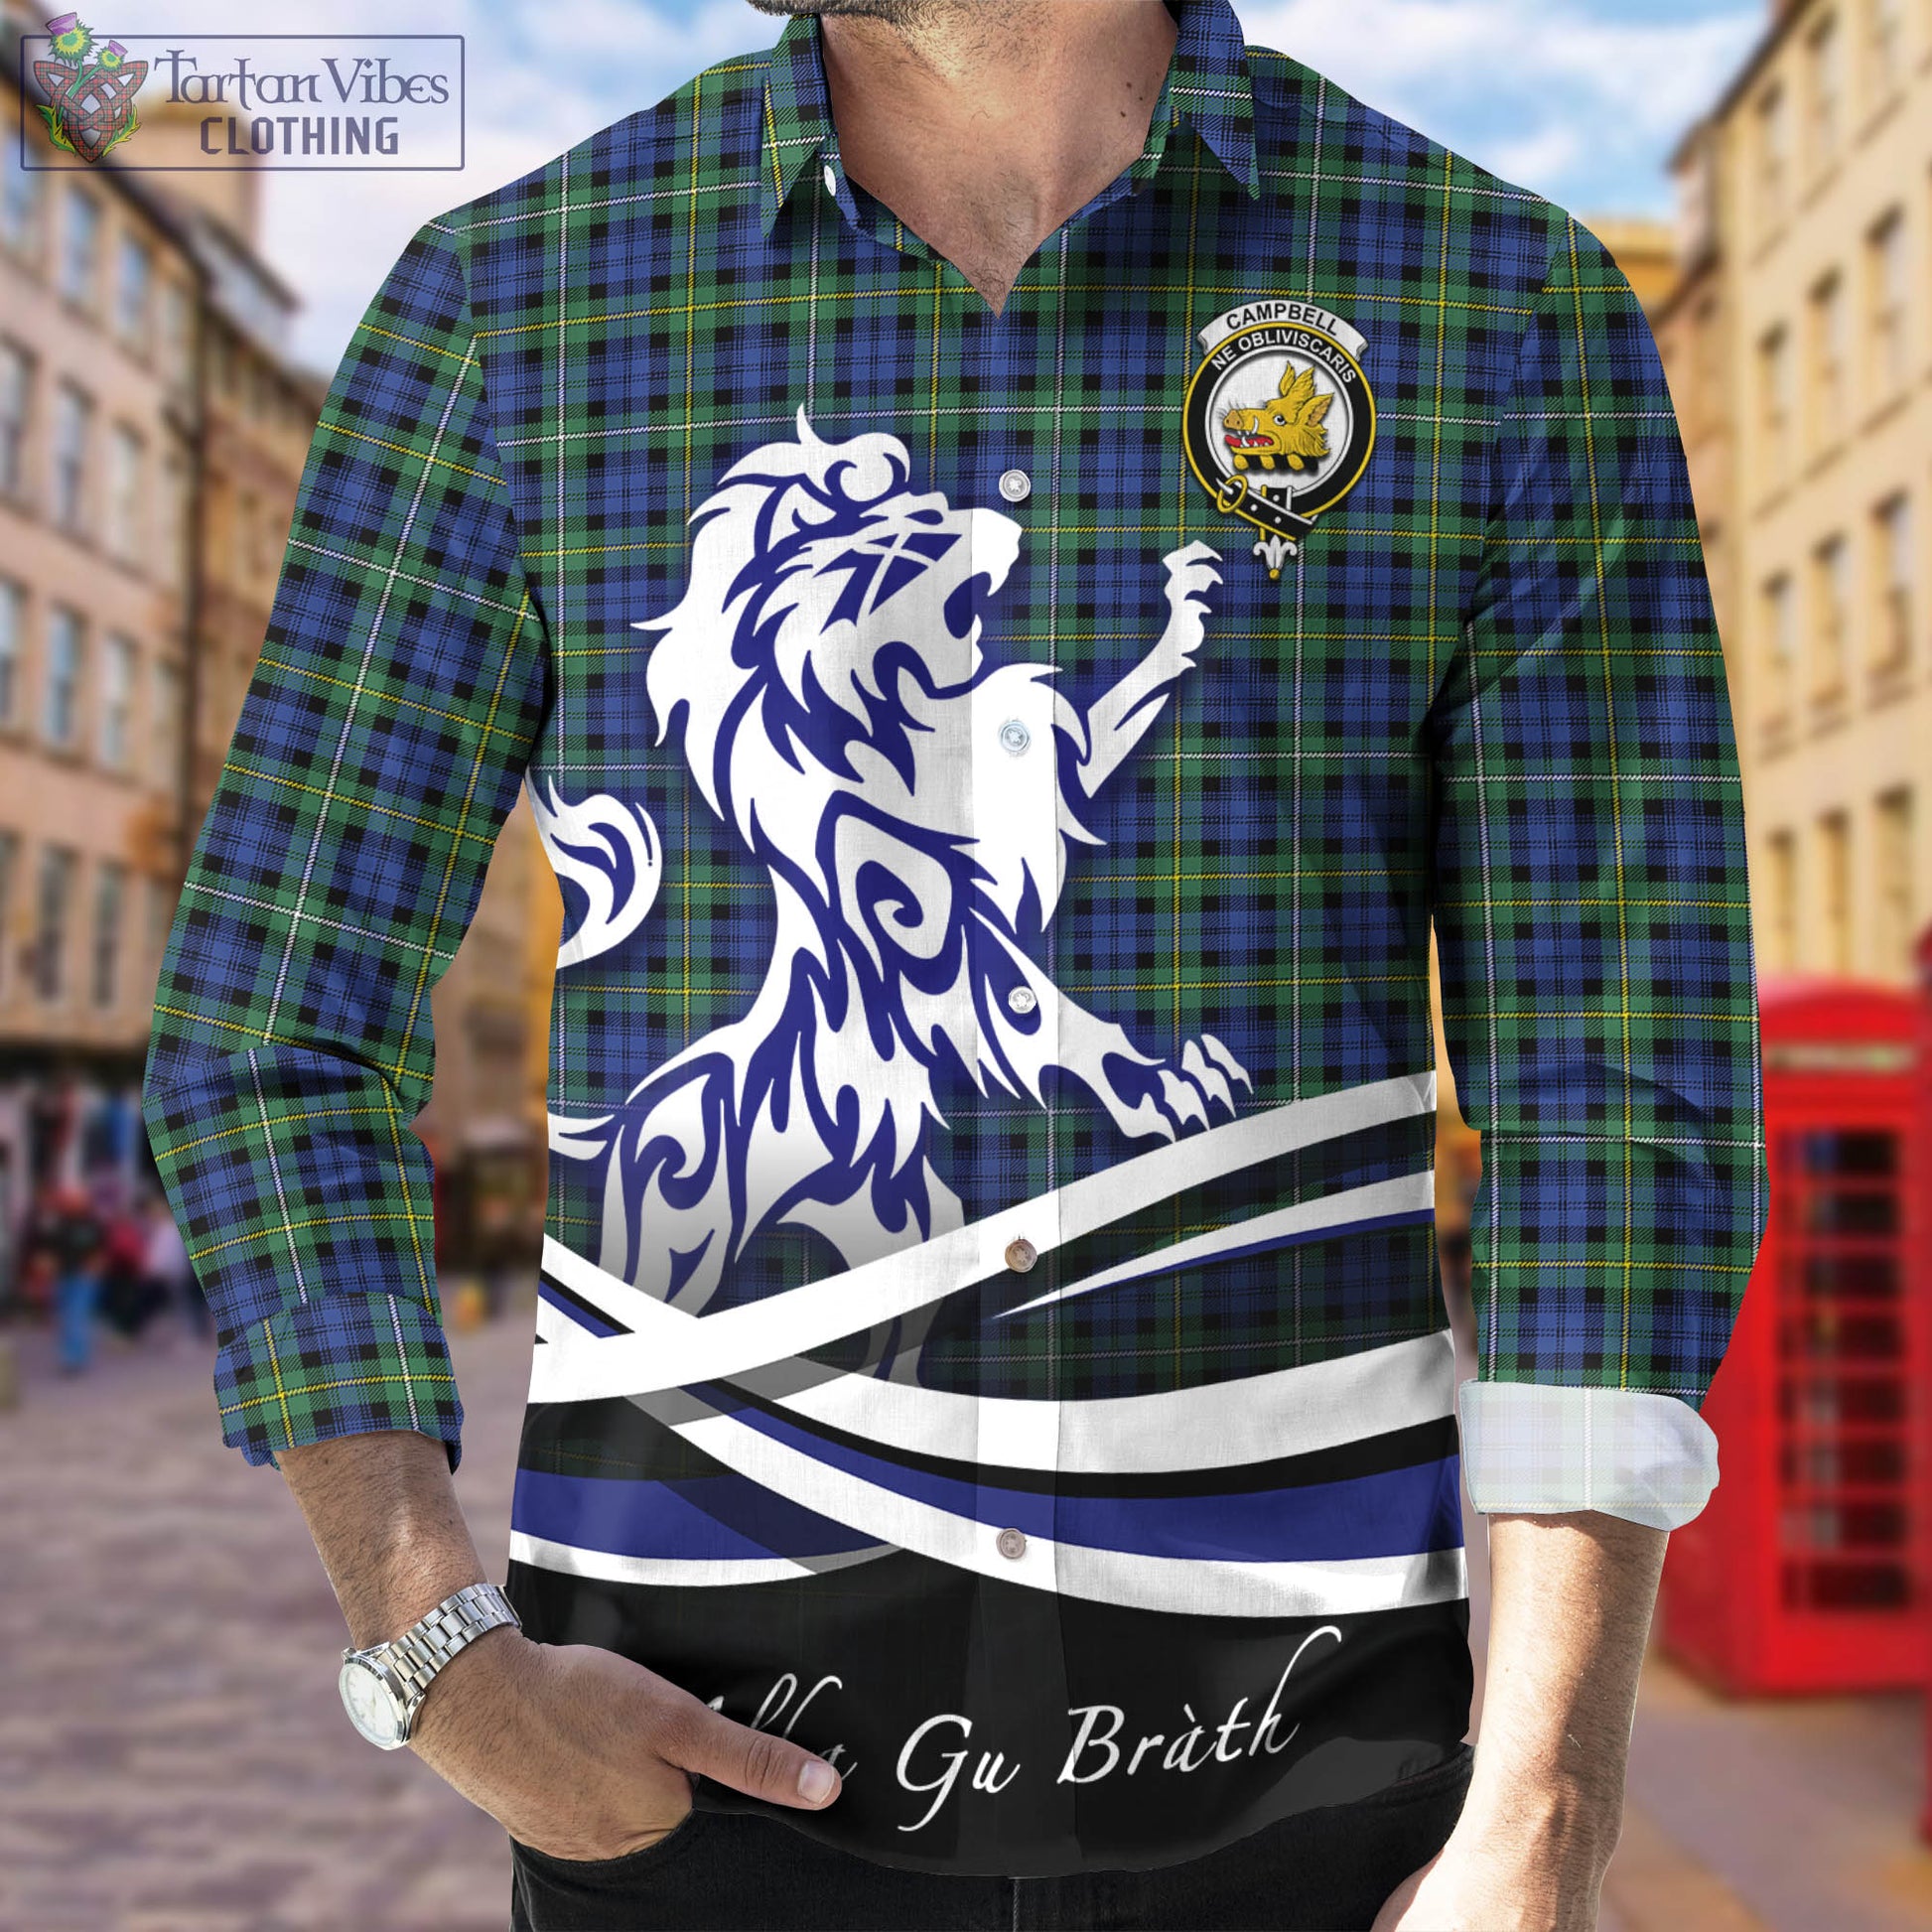 campbell-argyll-ancient-tartan-long-sleeve-button-up-shirt-with-alba-gu-brath-regal-lion-emblem